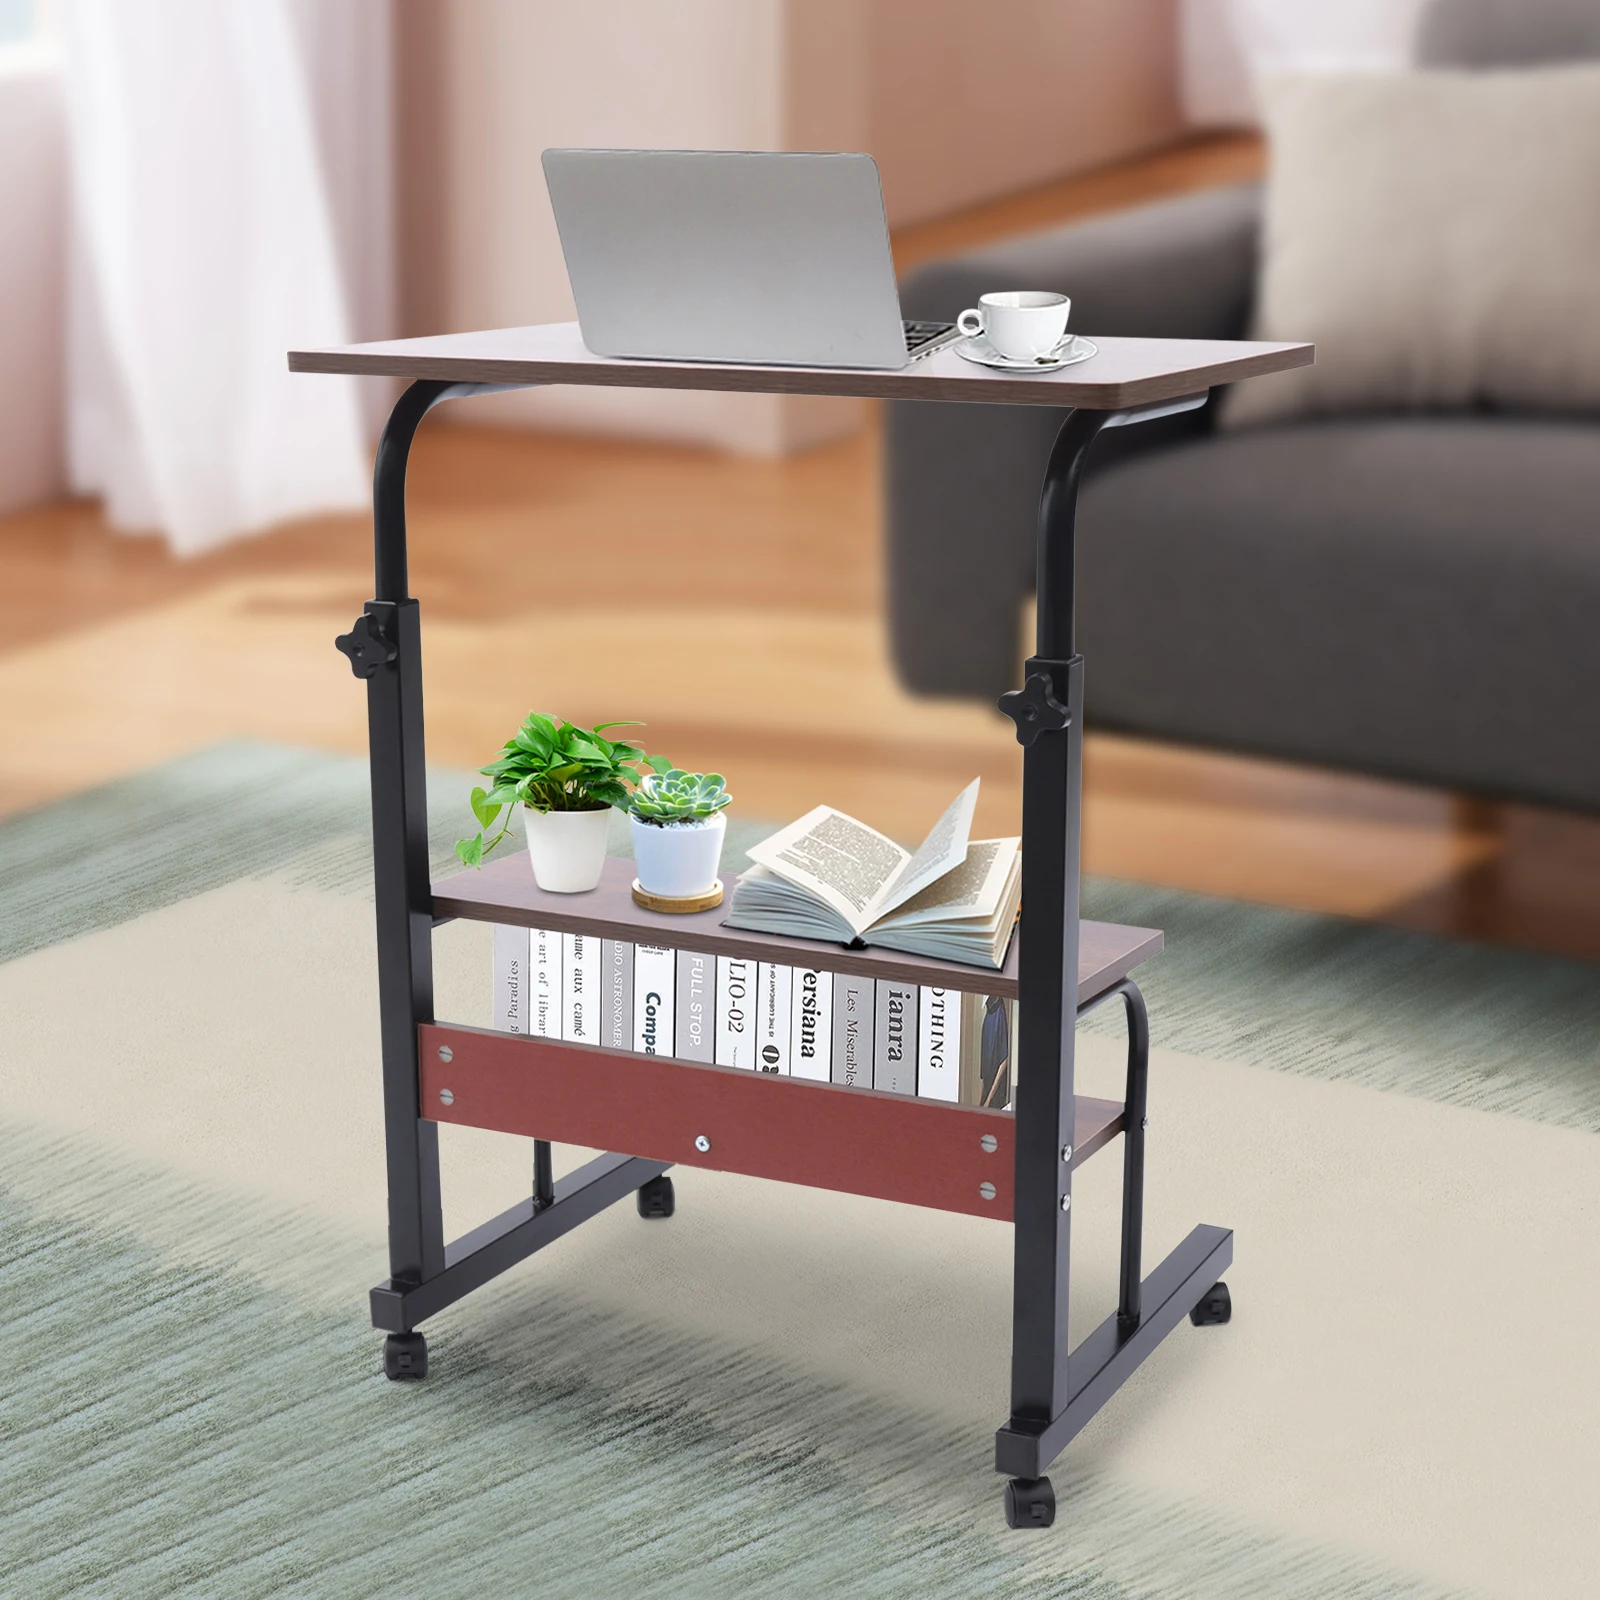 Регулируемый Передвижной приставной столик для ноутбука, стол для книг, тележка для стола + Верх на колесиках